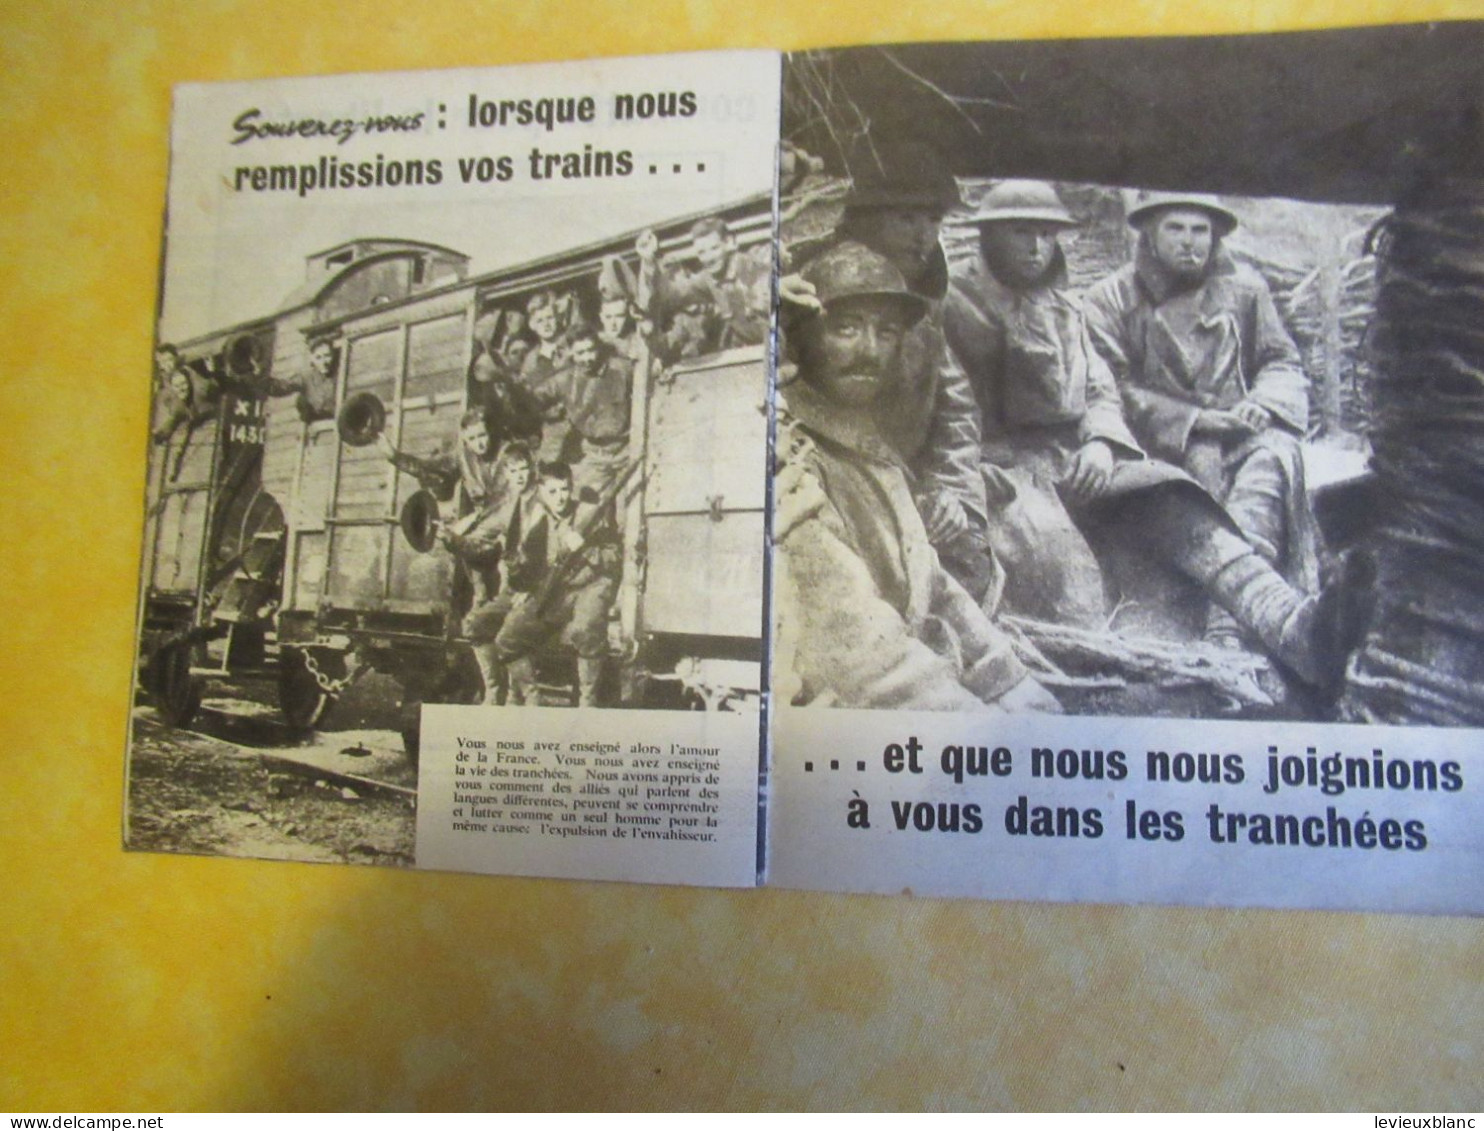 Petit fascicule de soutien/ à l'intention des Français/entrée en guerre des USA aux côtés des Alliés/1942  OL142